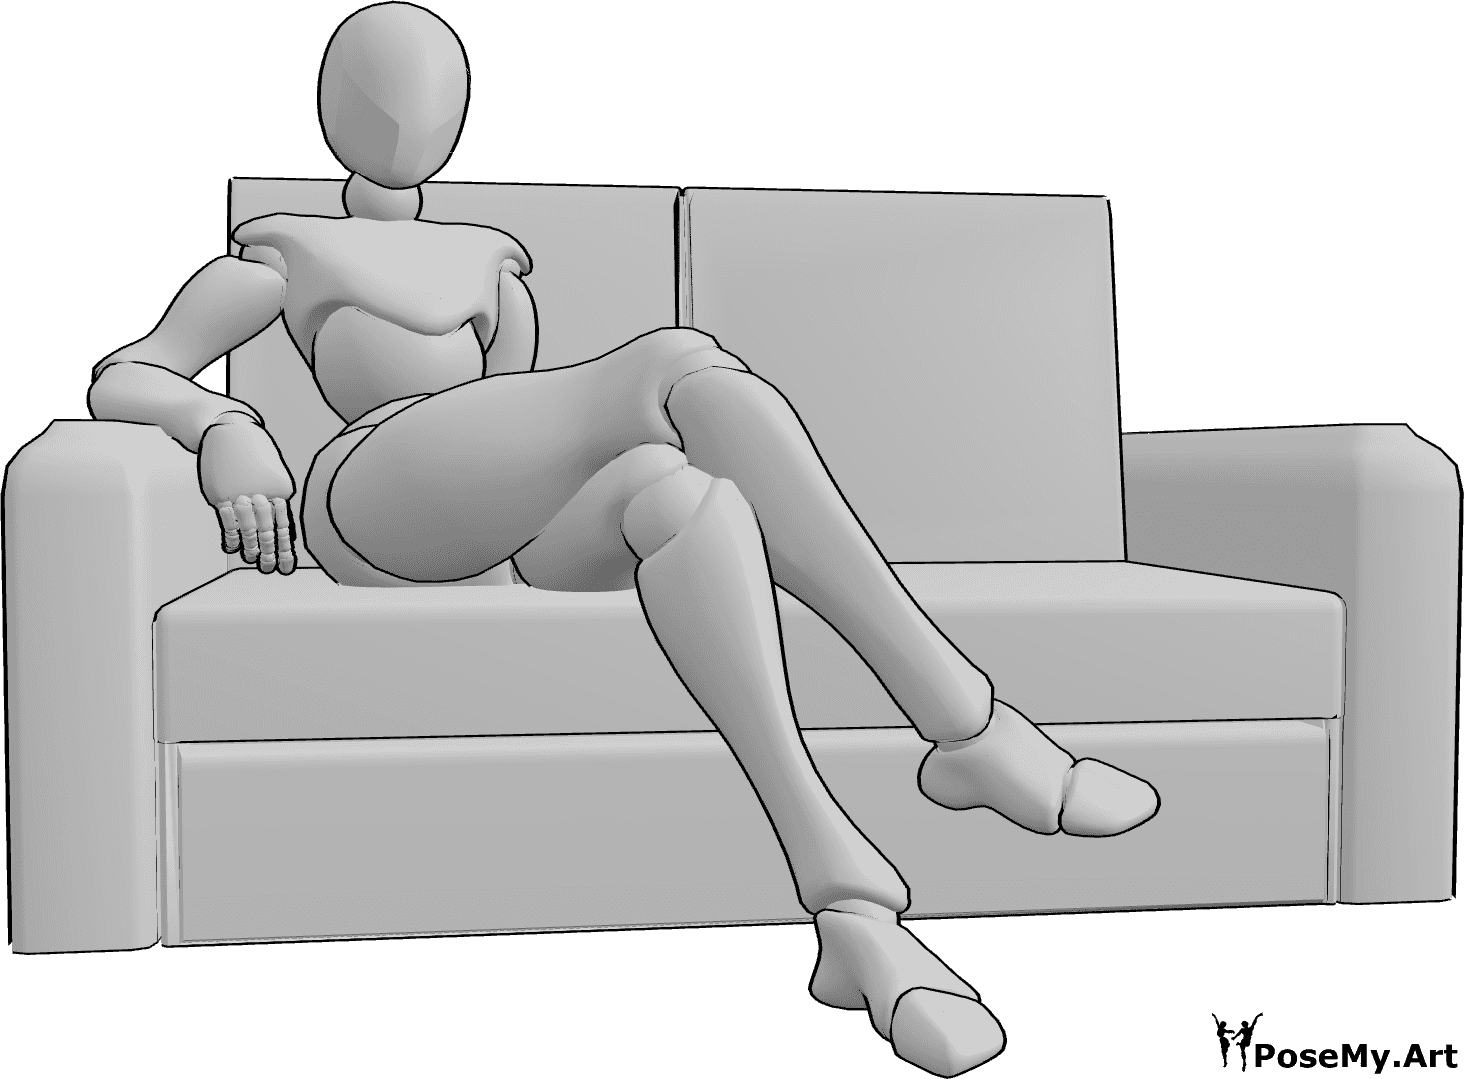 Posen-Referenz- Bequem sitzende Couch-Pose - Die Frau sitzt bequem mit gekreuzten Beinen auf der Couch